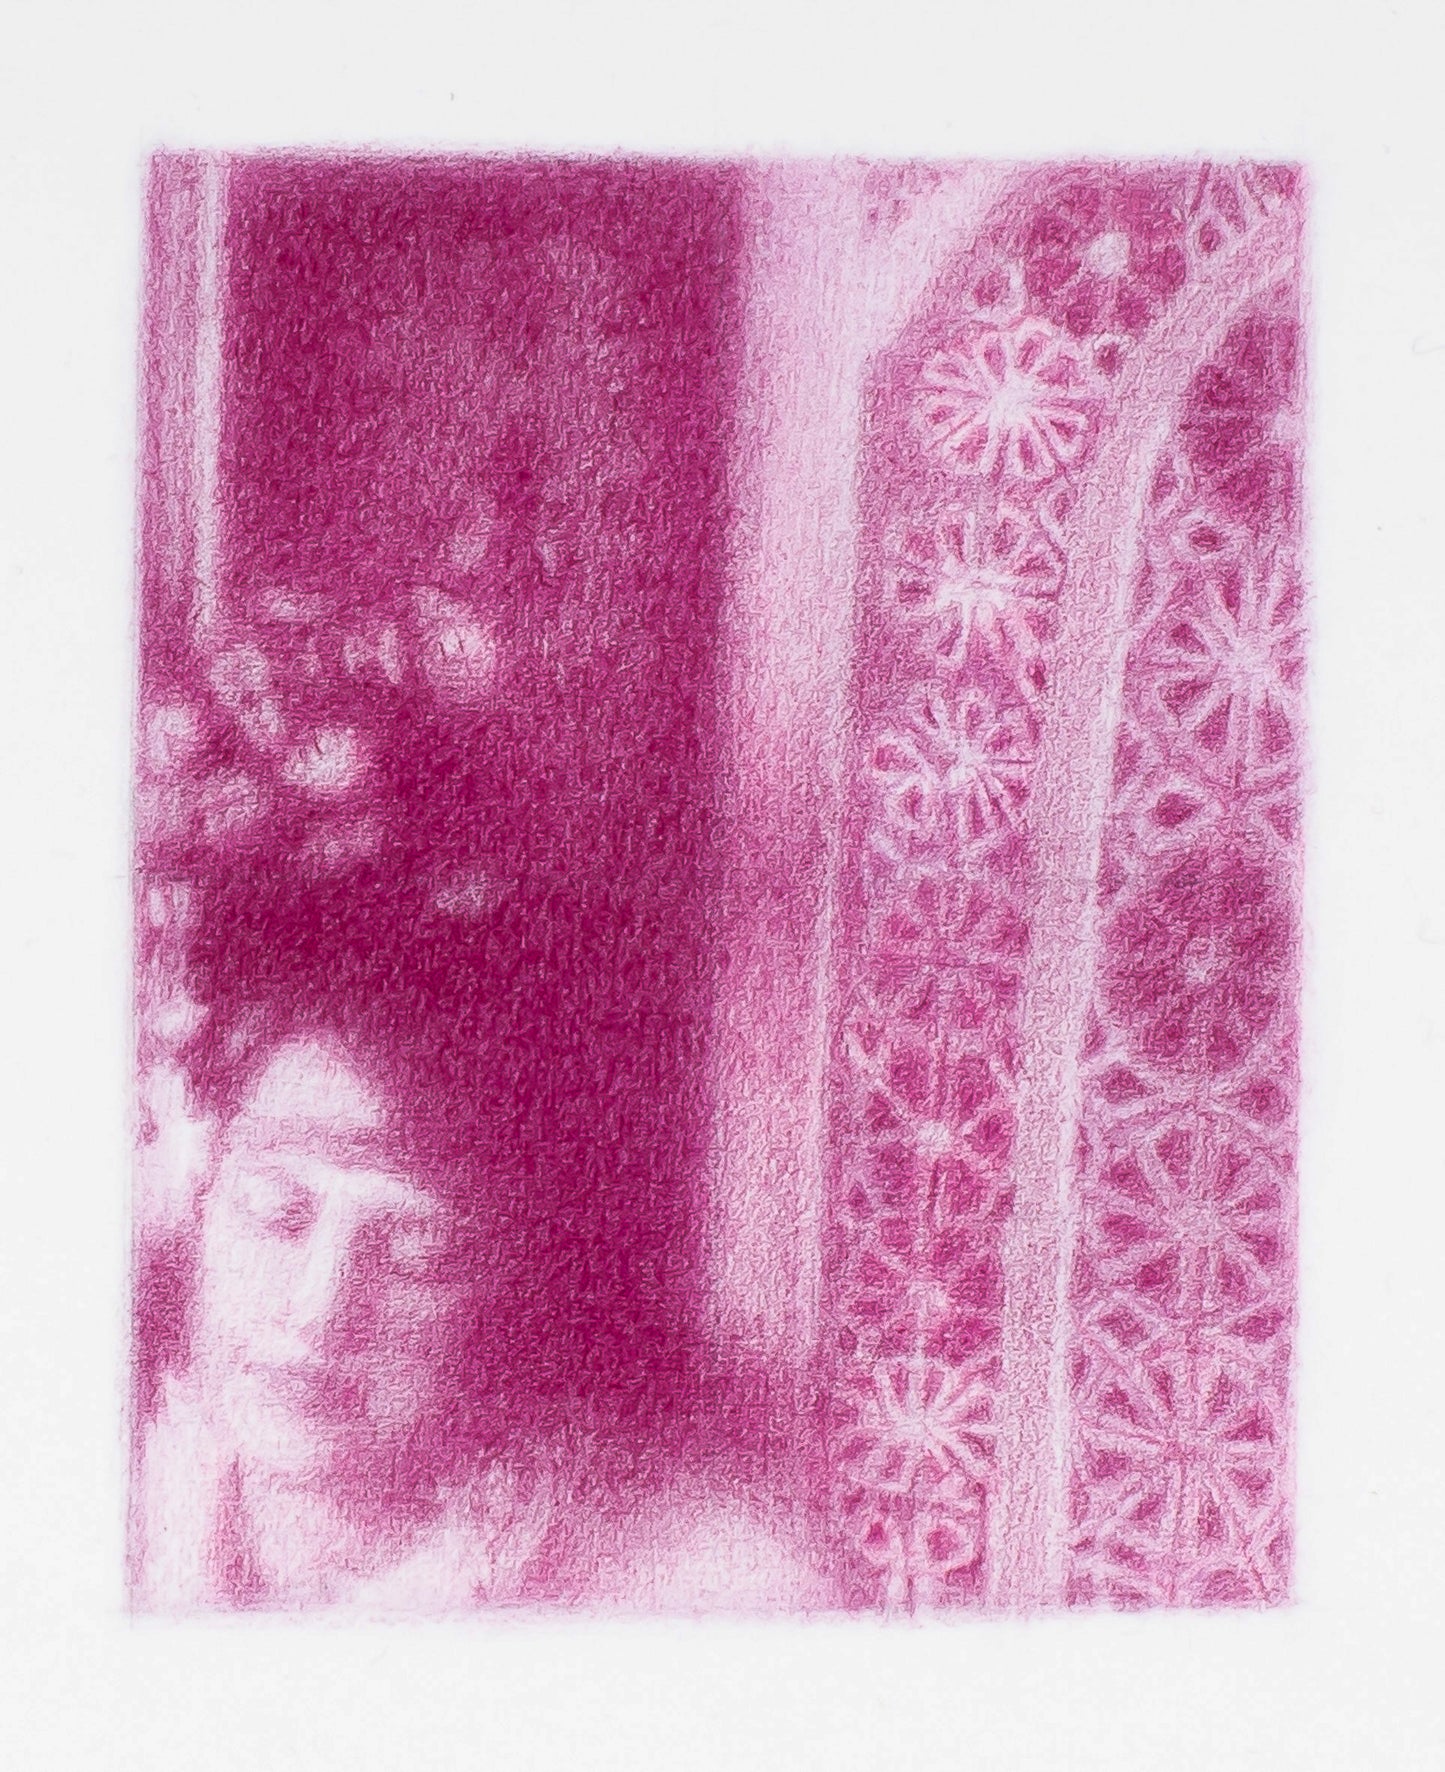 Matisse observing Henriette (Nice), 2020